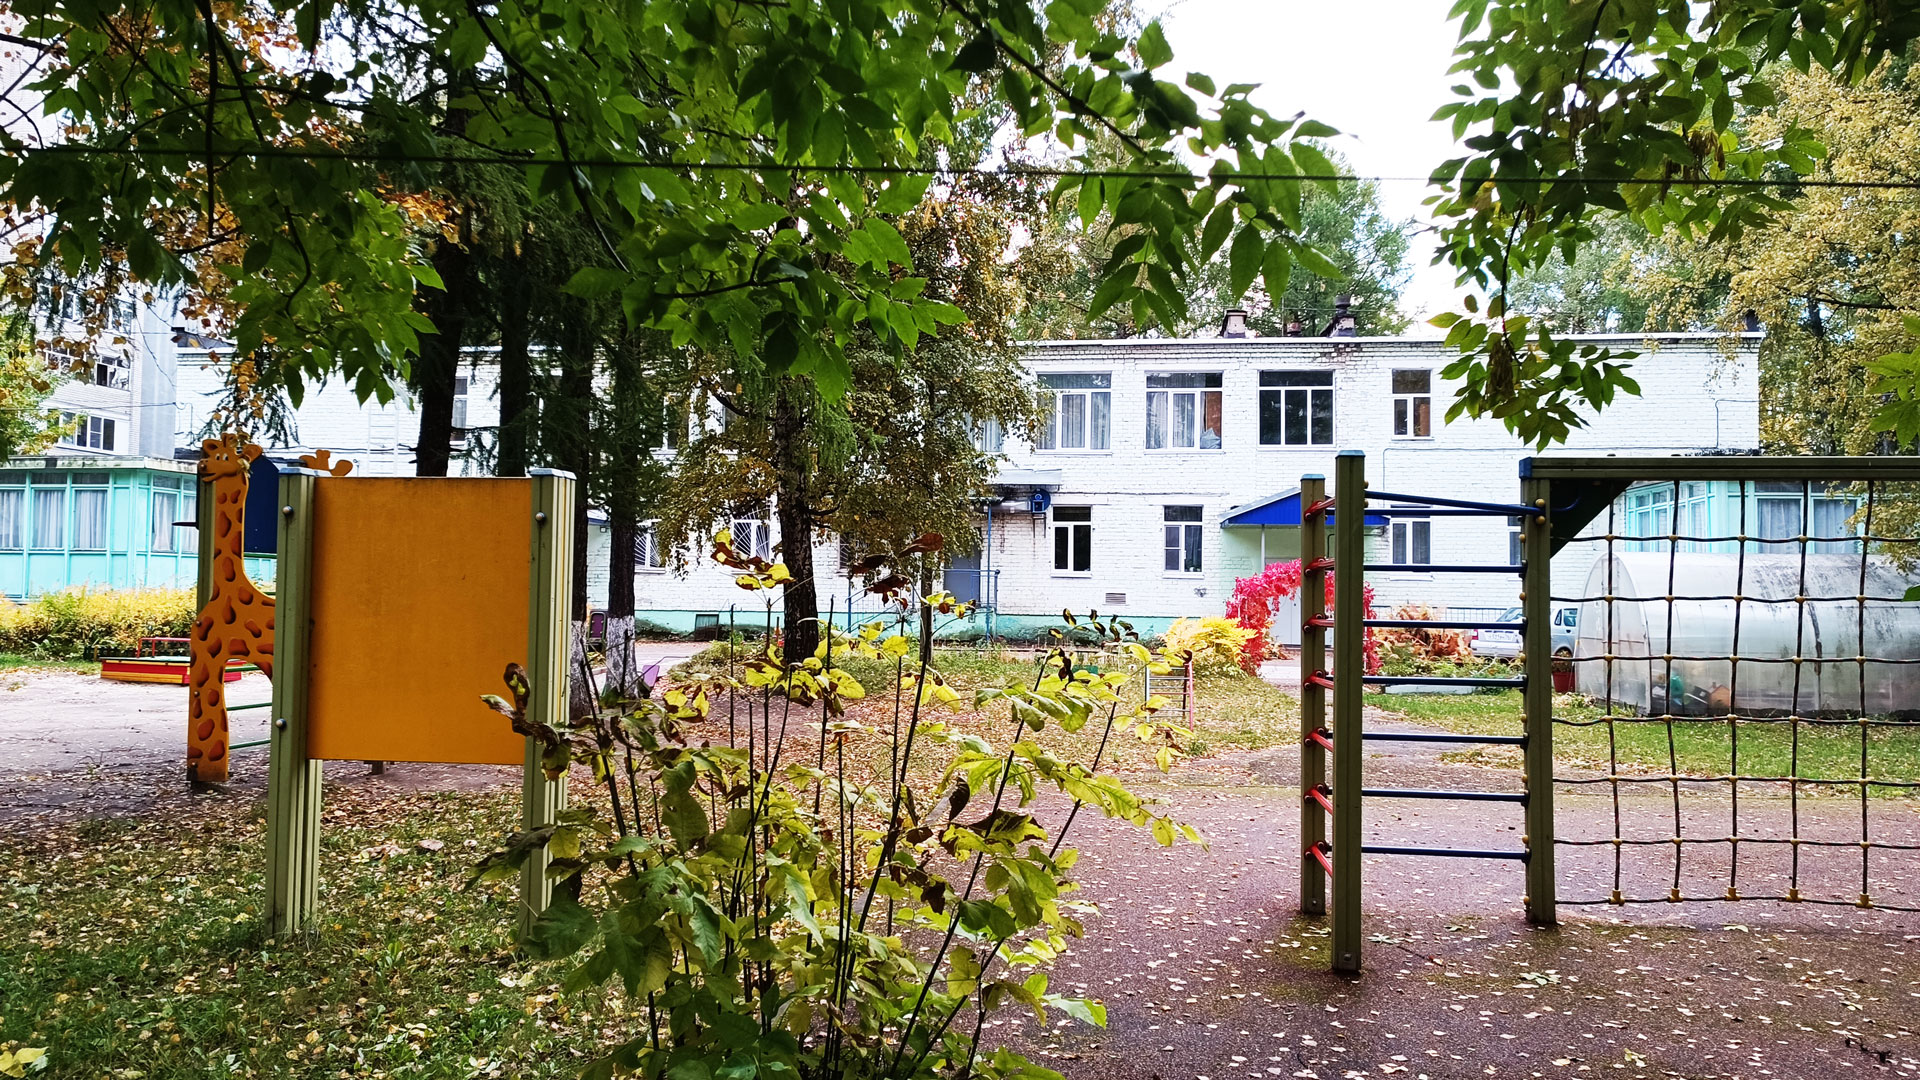 Детский сад 22 Ярославль: общий вид здания.